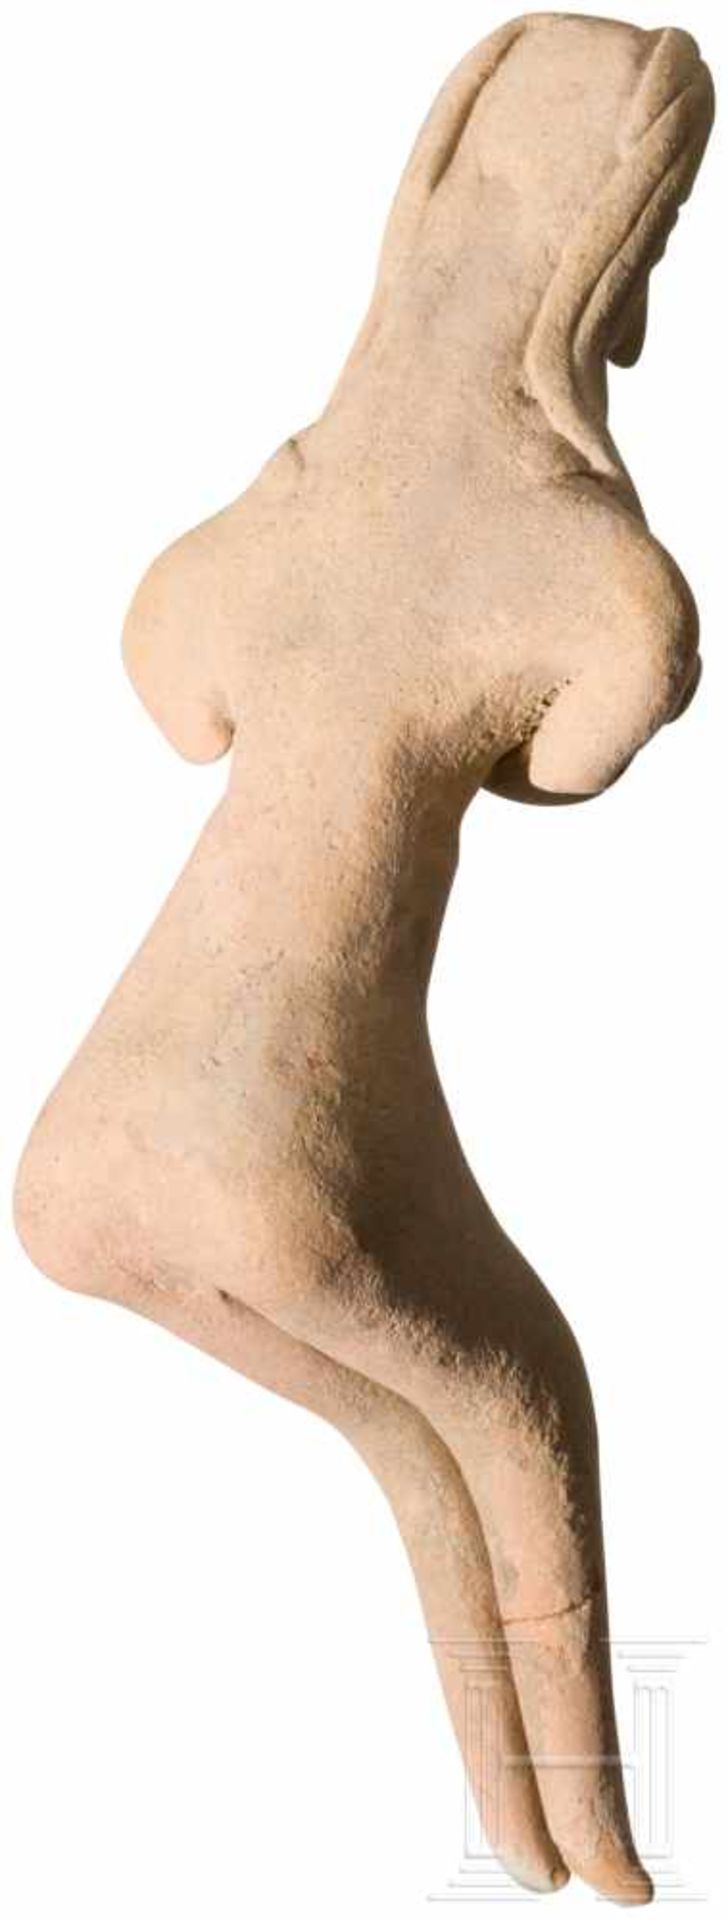 Weibliches Terrakotta-Idol, Indus Valley Civilization, Pakistan-Nordwestindien, 3. Jtsd. v. Chr. - Bild 3 aus 3